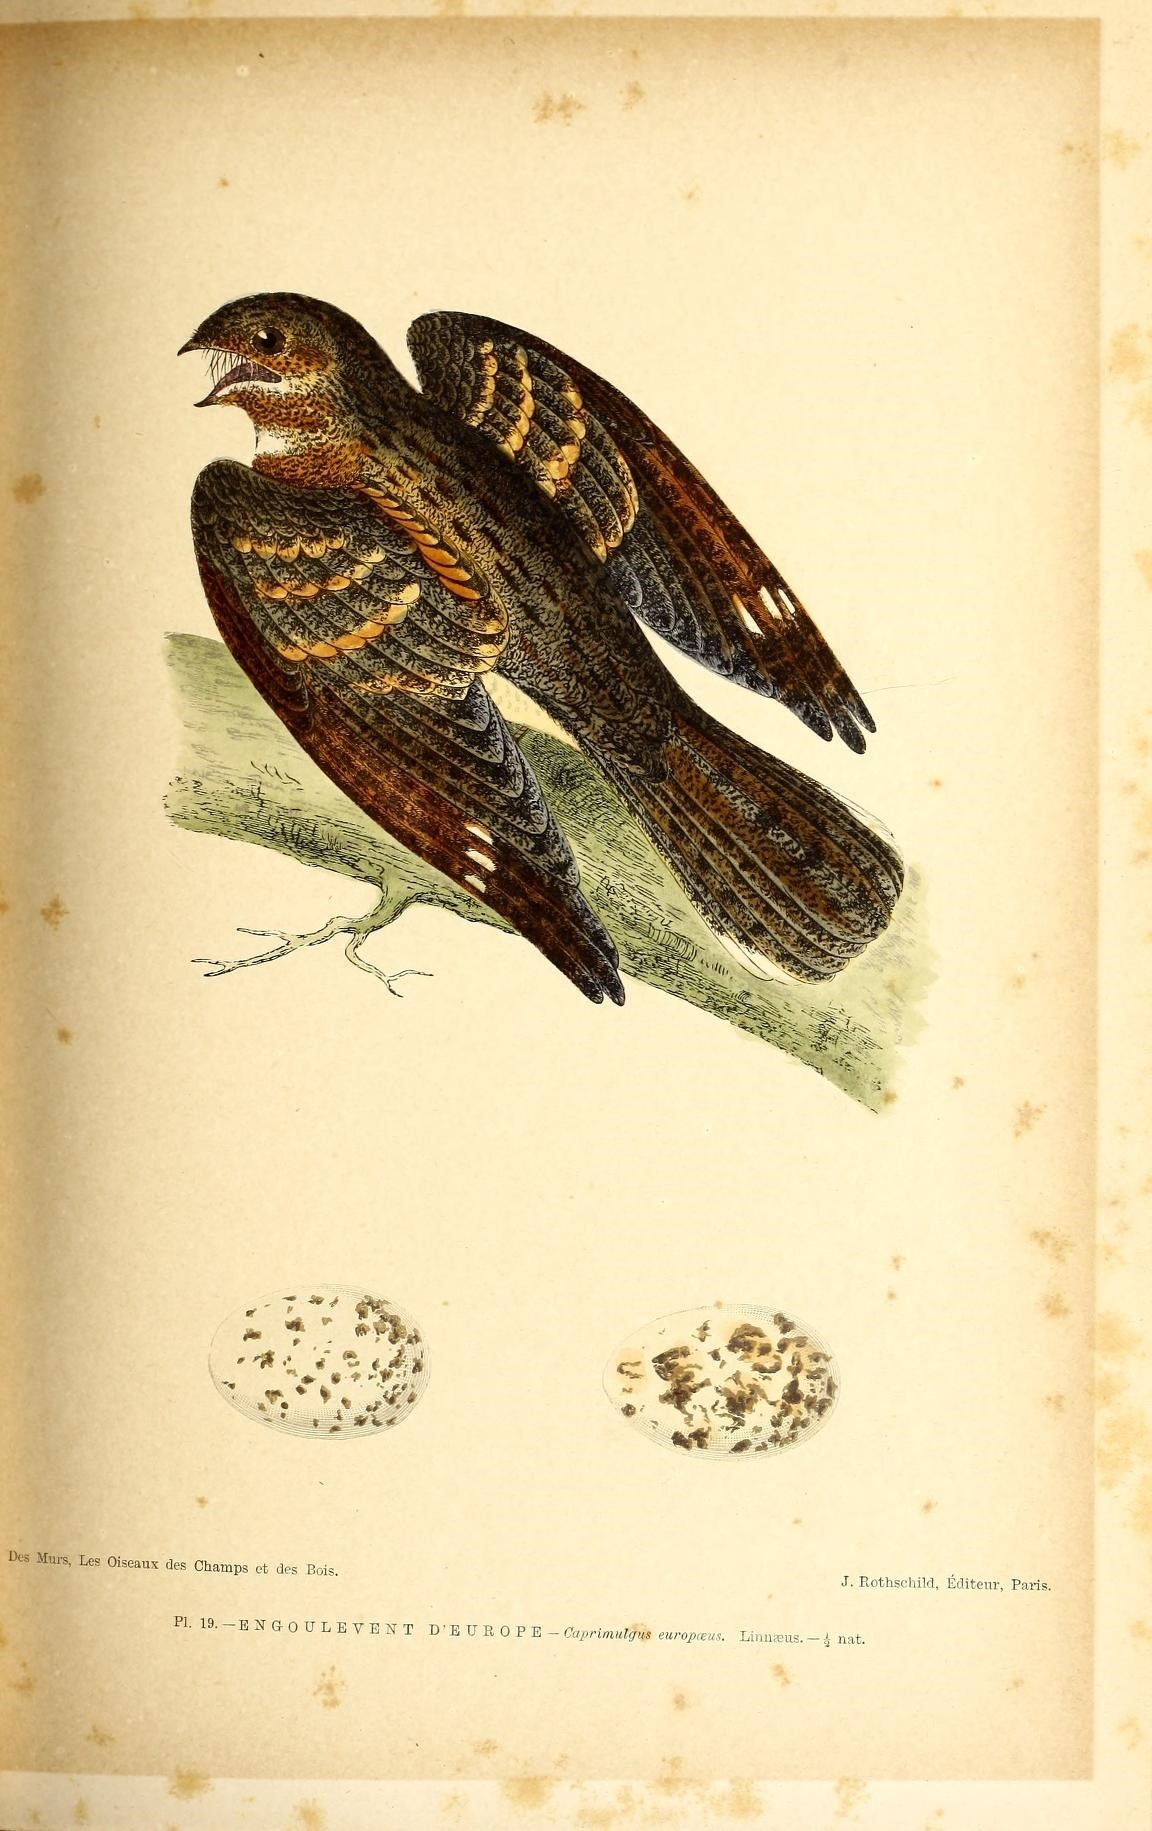 Image of nightjar, european nightjar